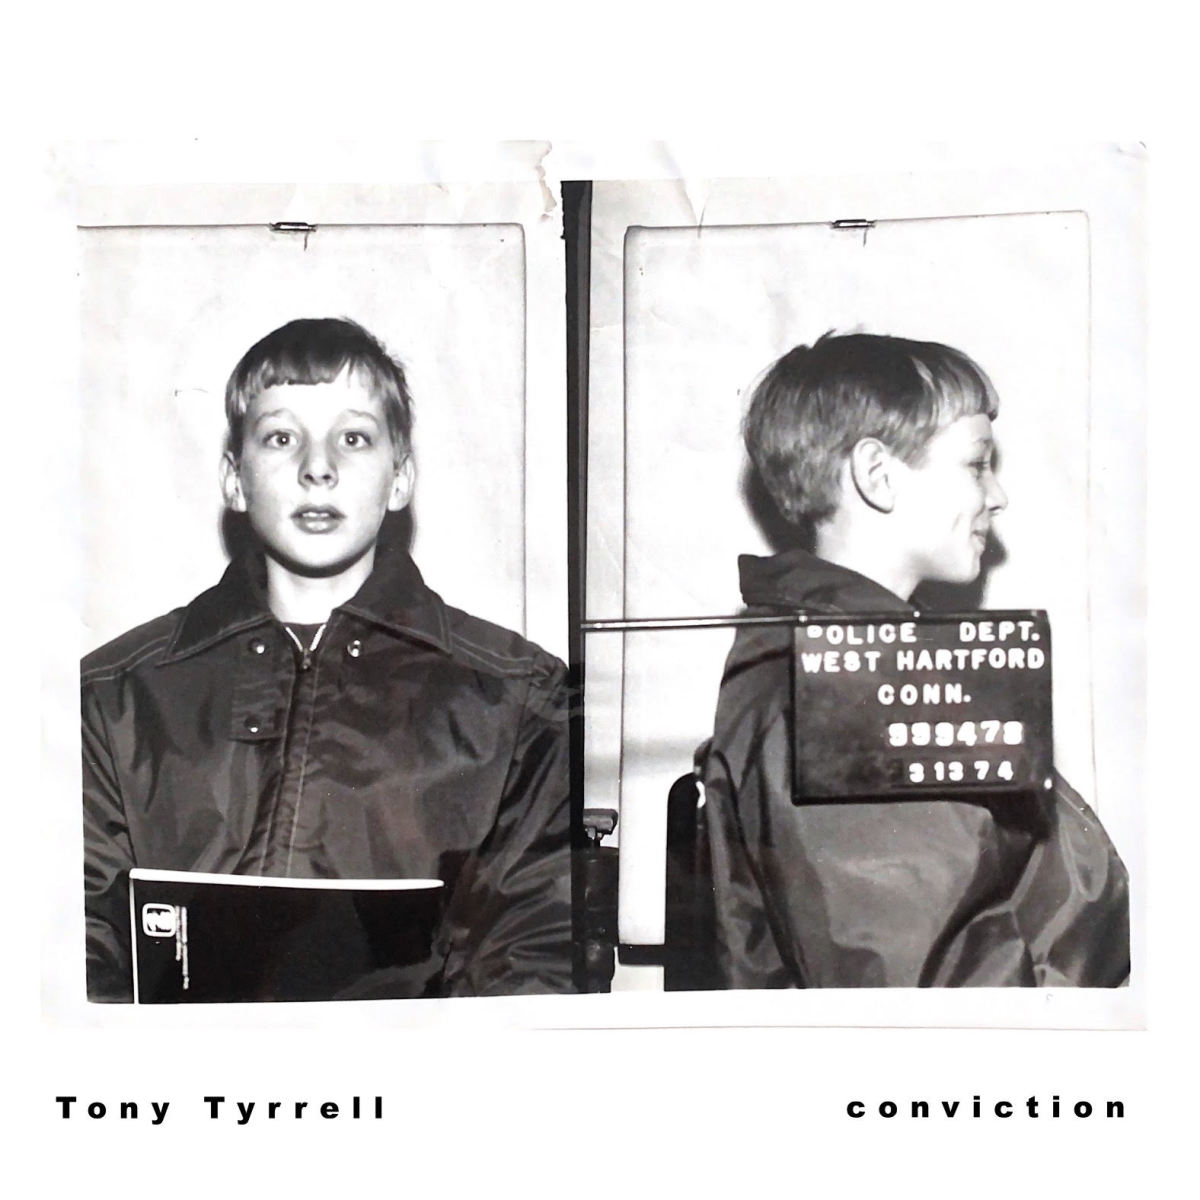 Tony Tyrrell